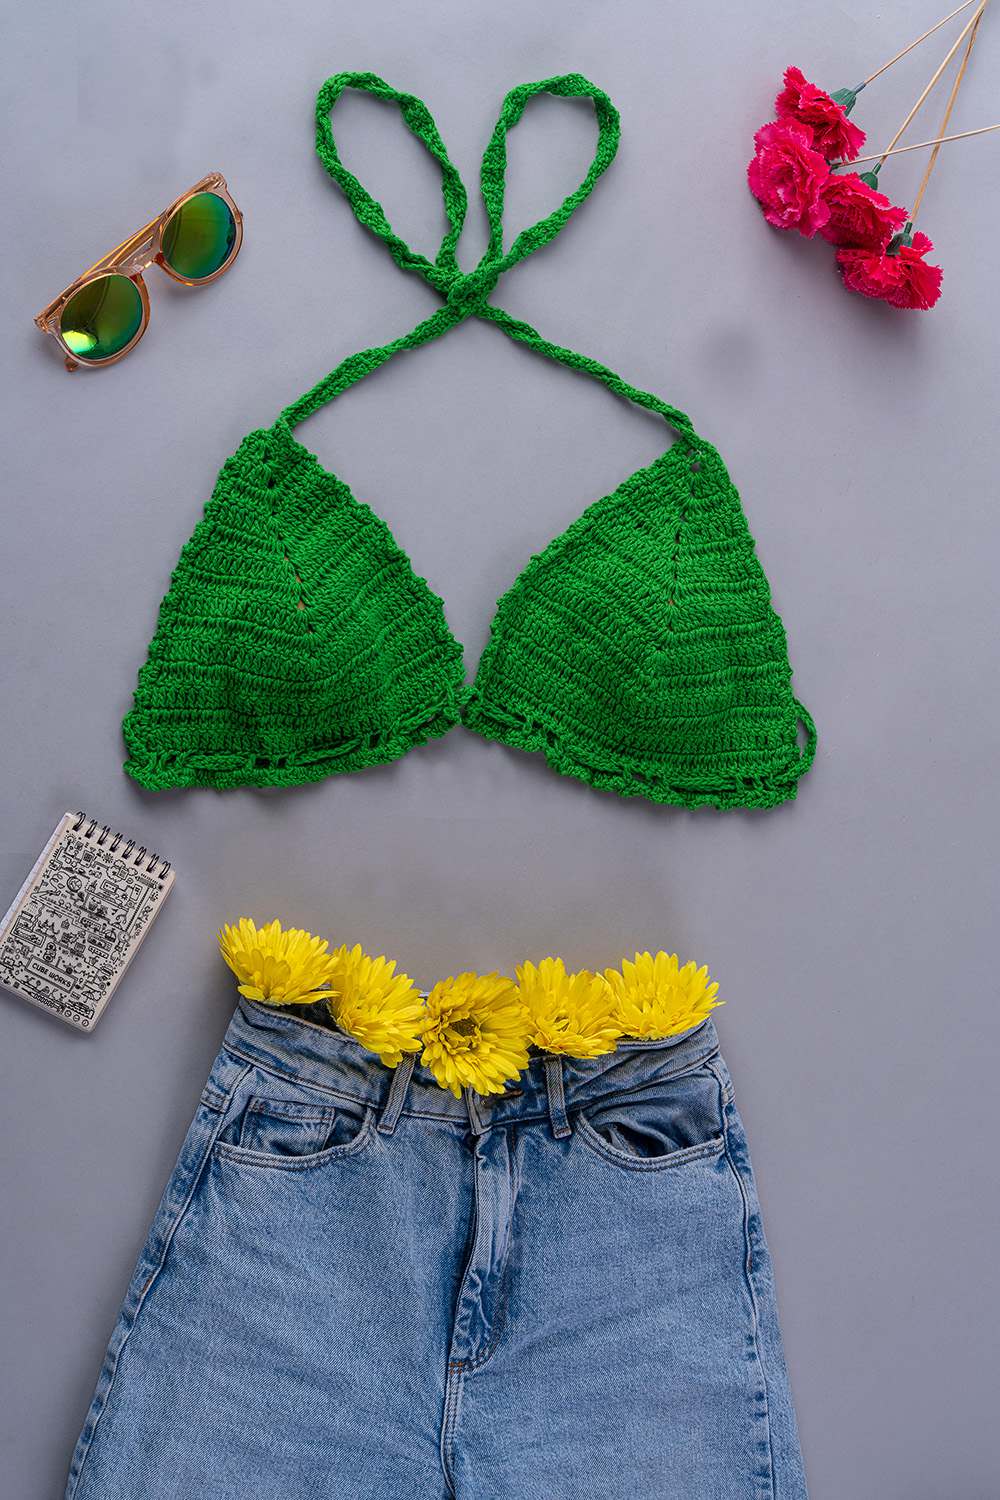 Buy Crochet Green Bra In the Best Price - Hand Knitted Crochet Top & Bralette